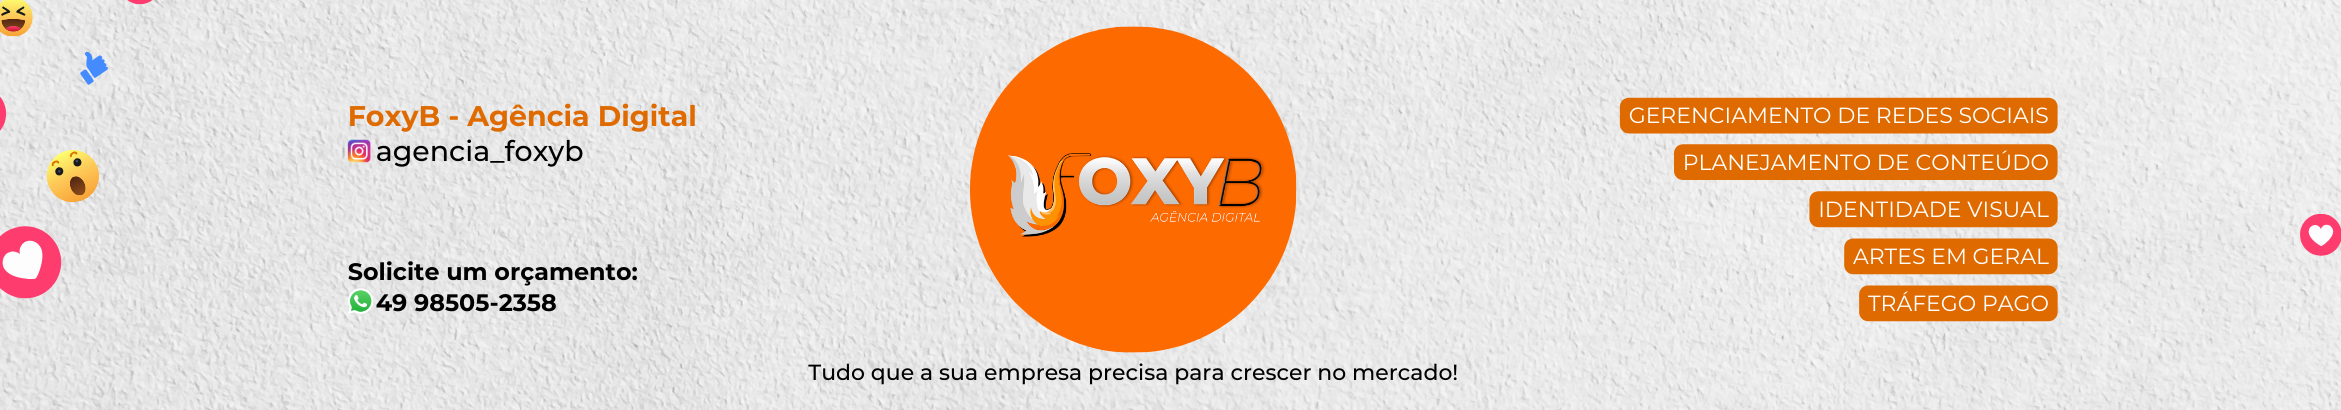 FoxyB Agência Digital's profile banner